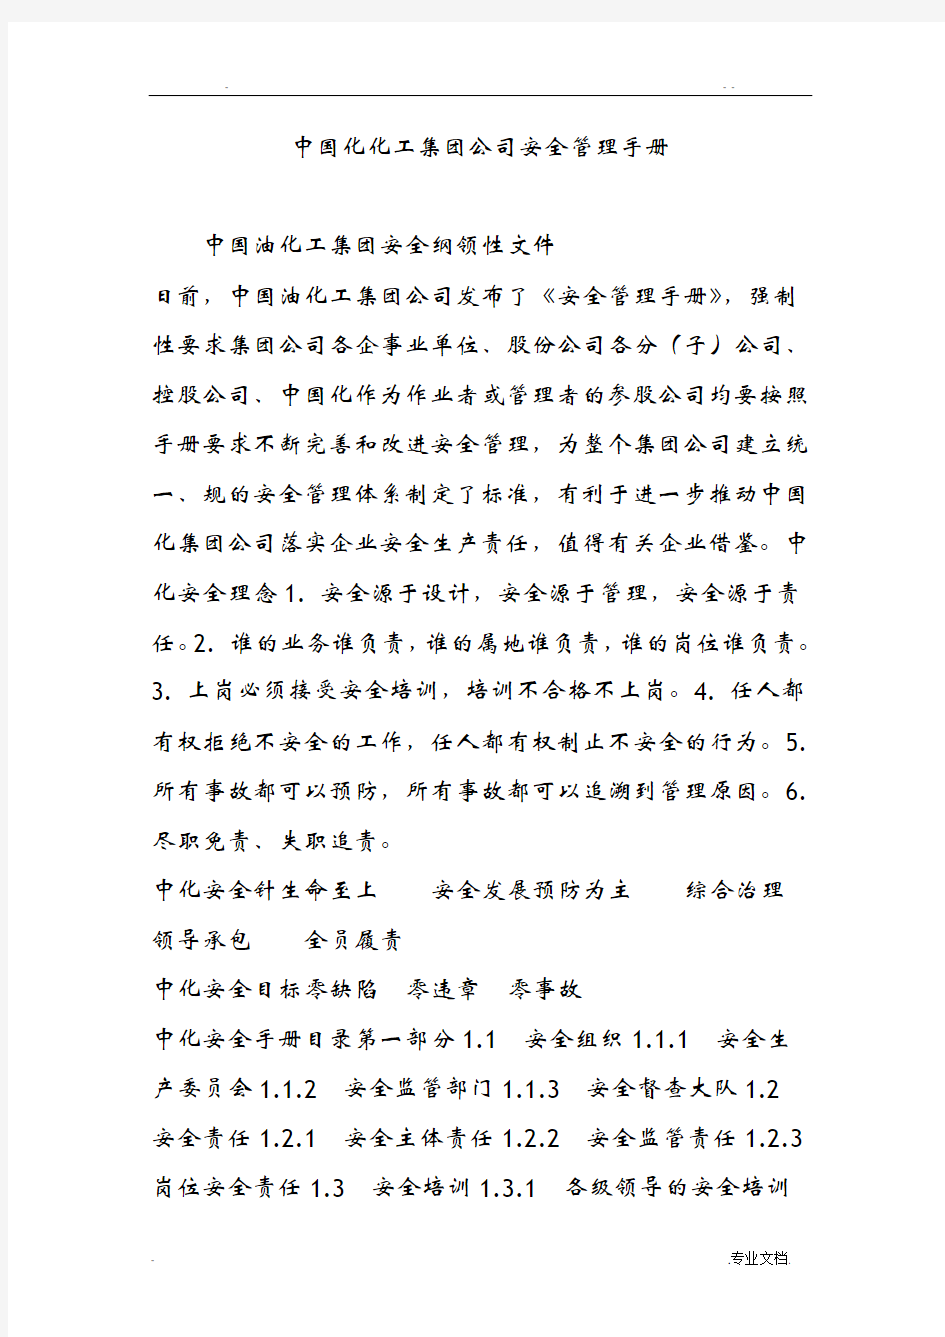 中国石化化工集团公司安全管理手册